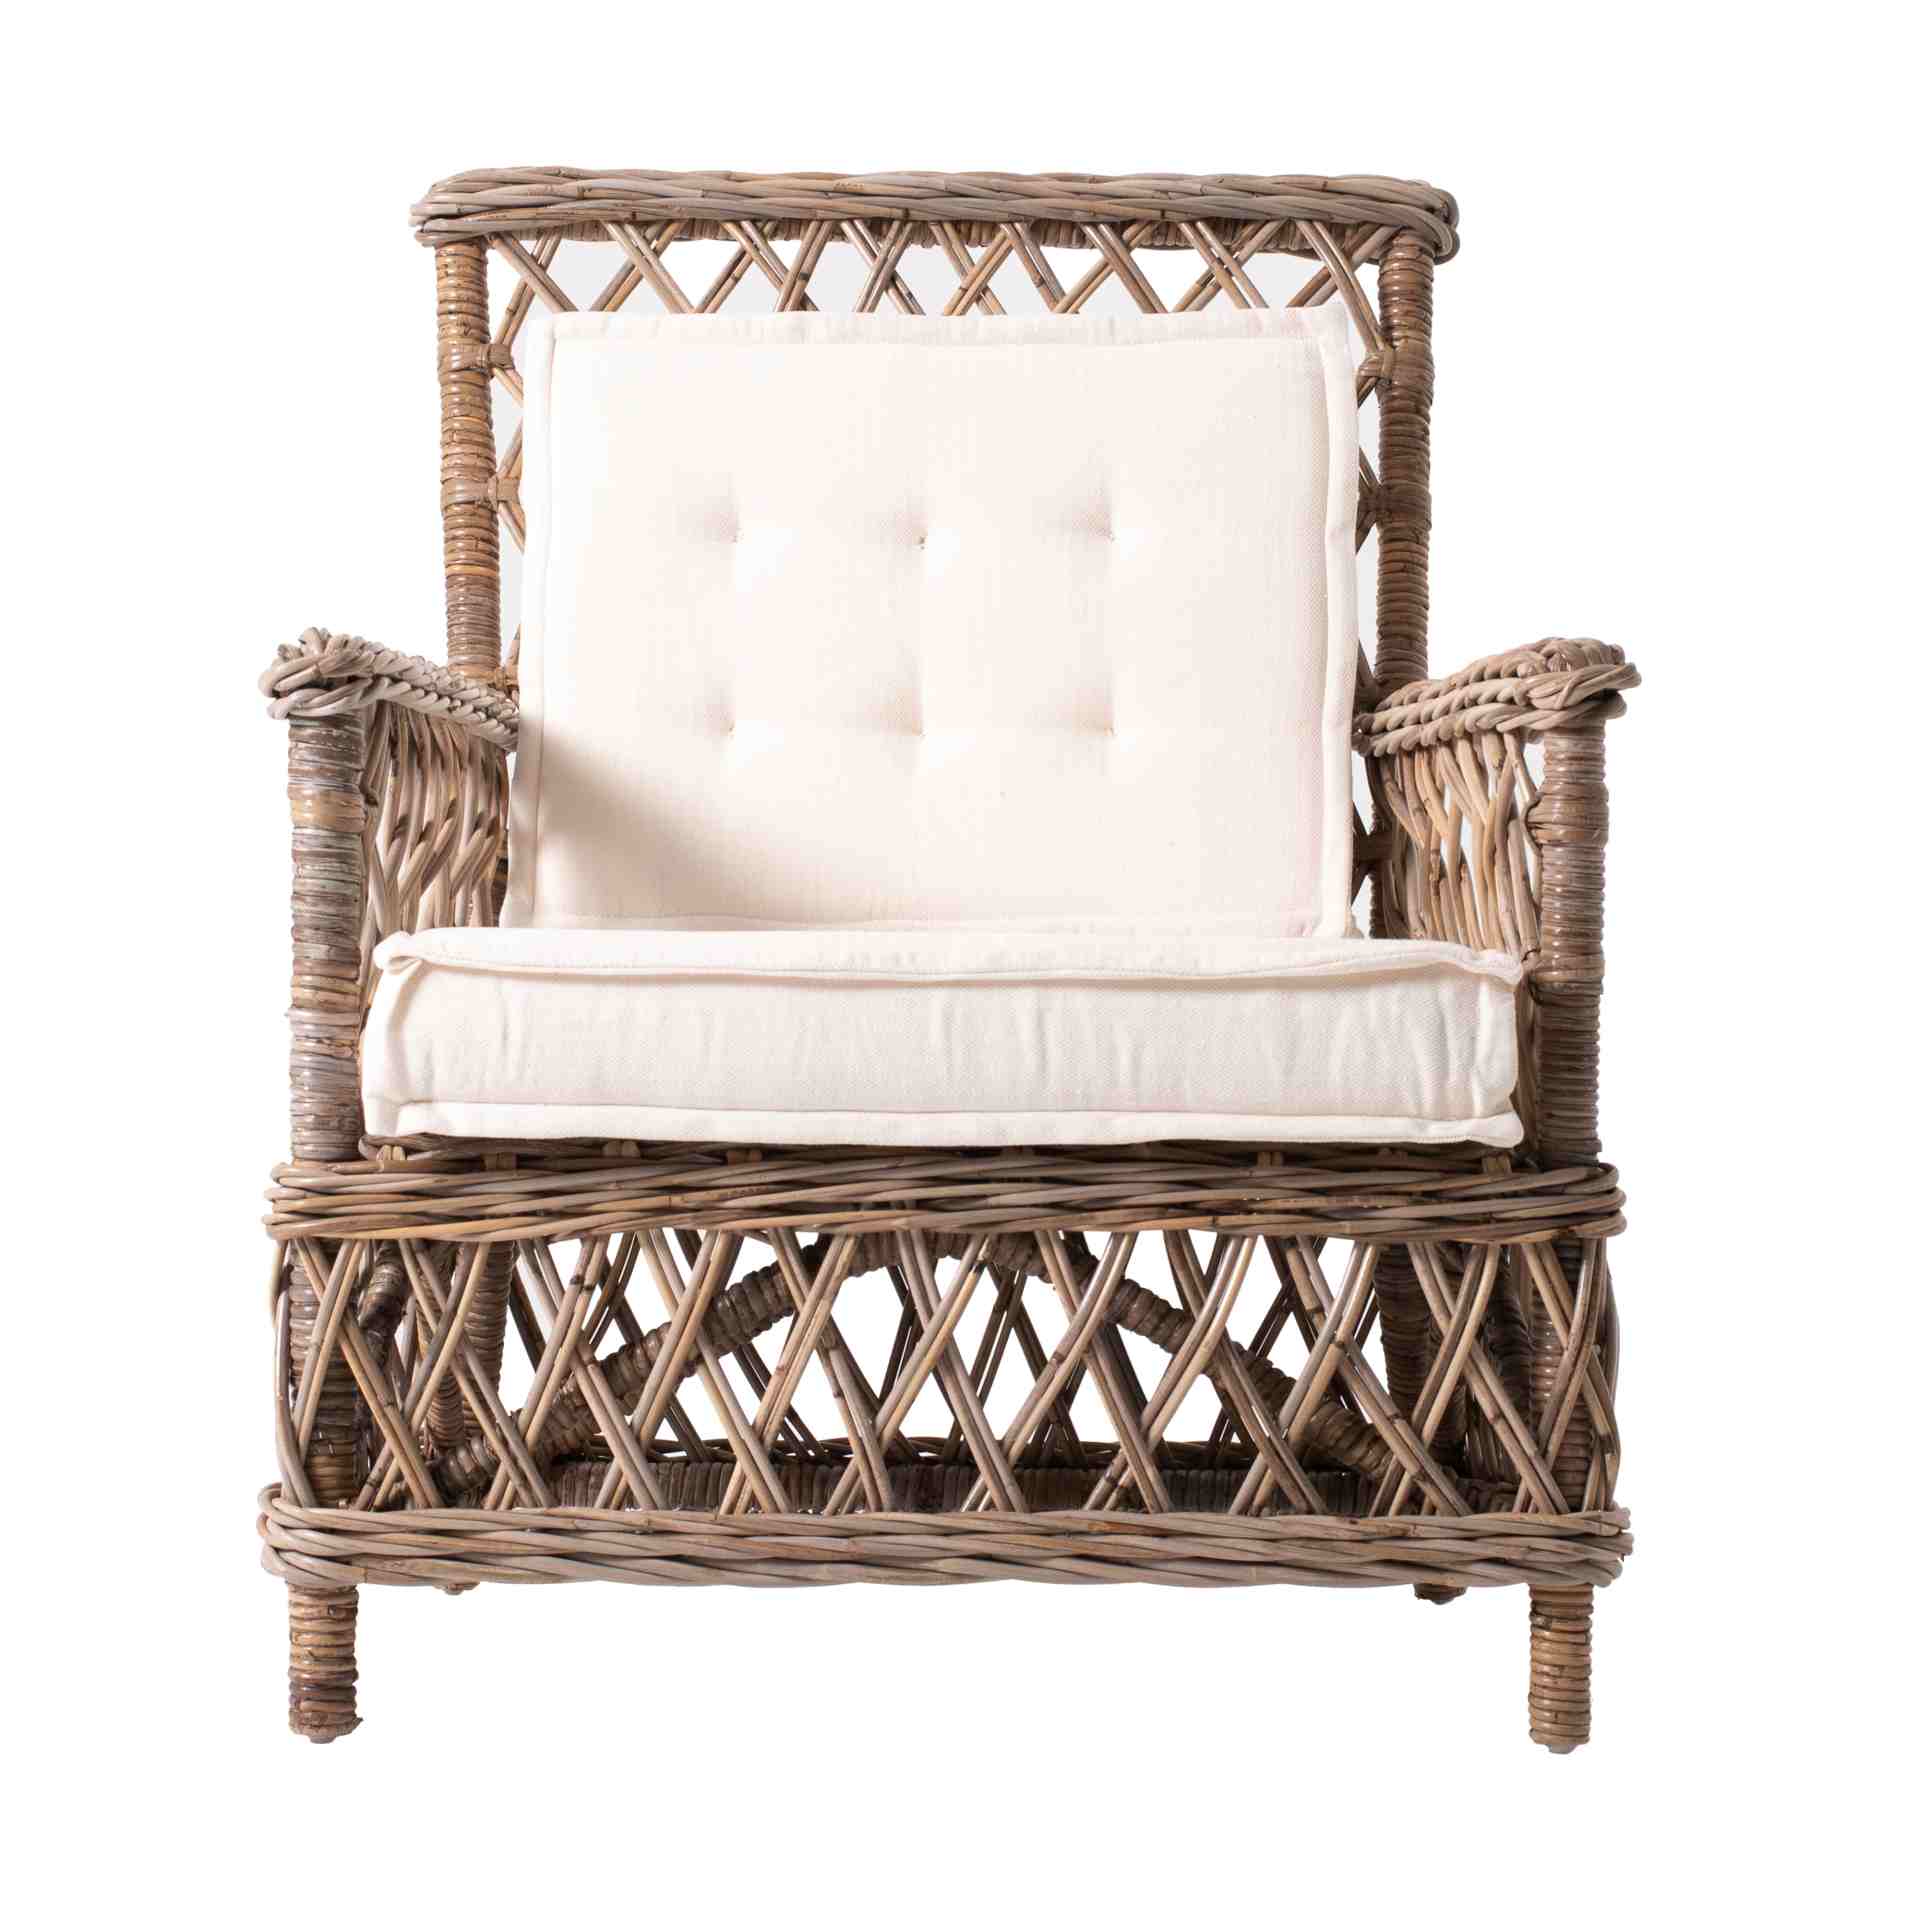 Der Armlehnstuhl Marquis überzeugt mit seinem Landhaus Stil. Gefertigt wurde er aus Kabu Rattan, welches einen braunen Farbton besitzt. Der Stuhl verfügt über eine Armlehne und ist im 2er-Set erhältlich. Die Sitzhöhe beträgt beträgt 34 cm.